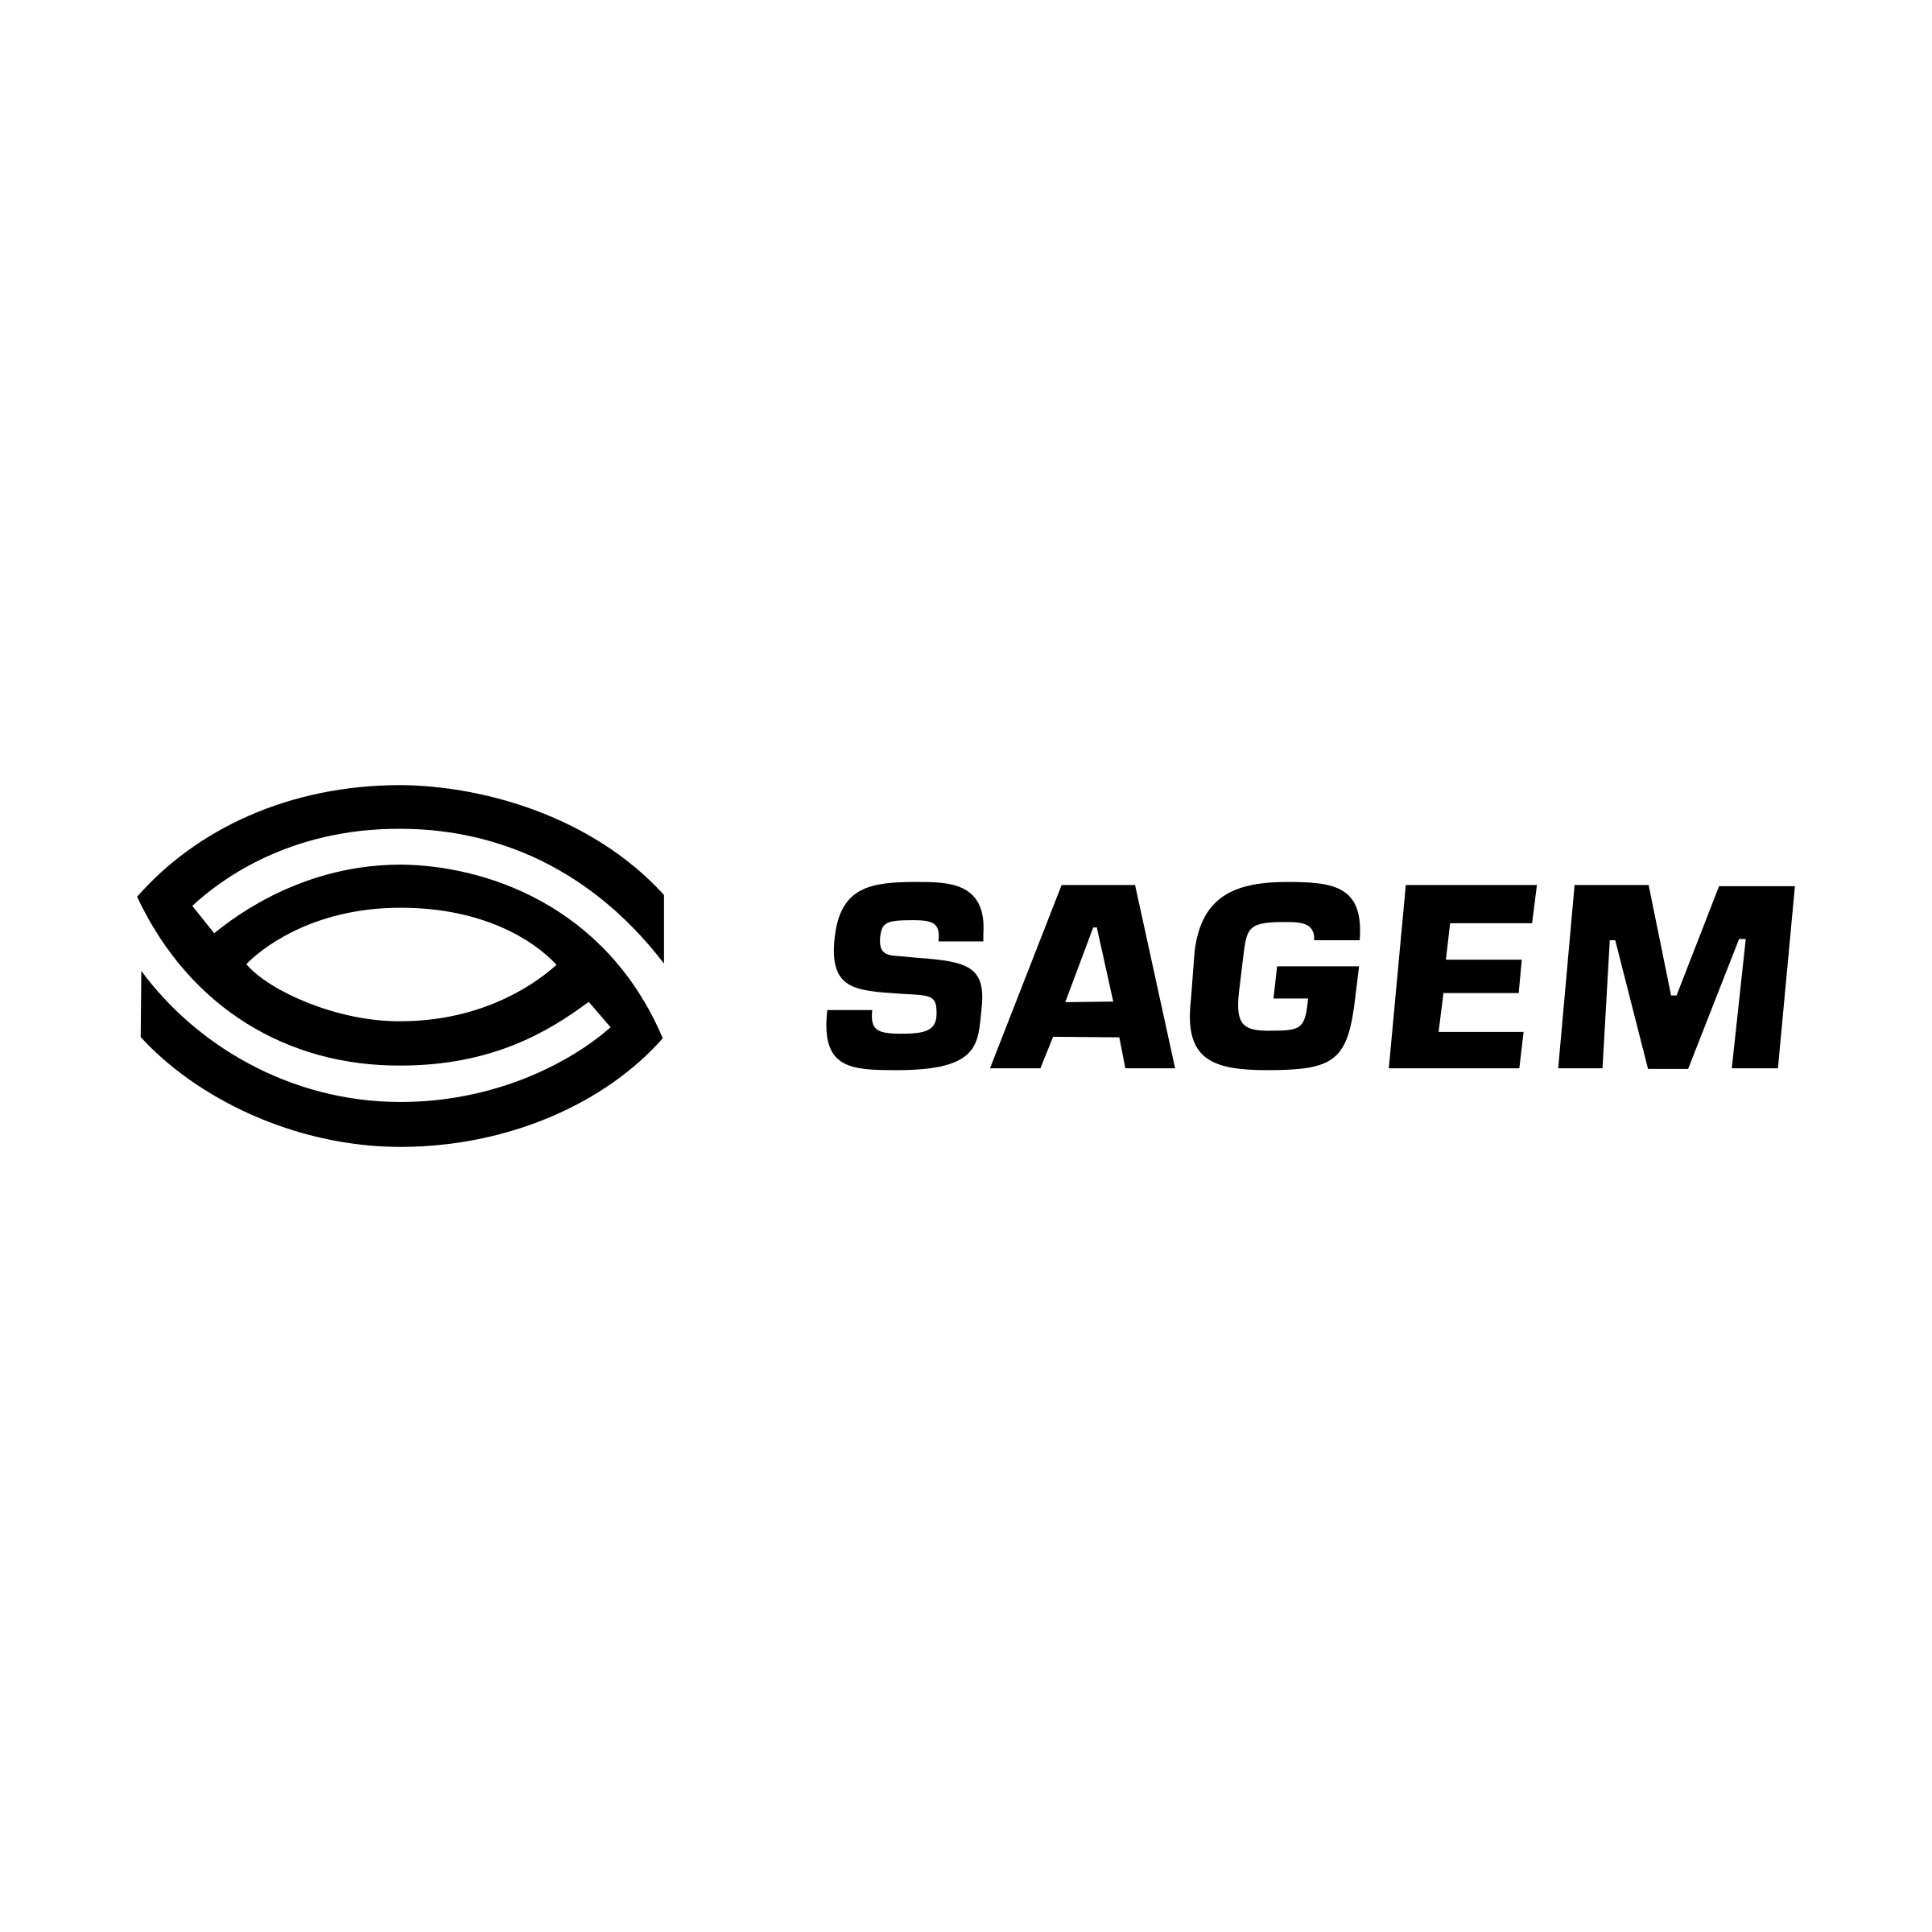 Sagem Logo - Sagem Logo PNG Transparent & SVG Vector - Freebie Supply